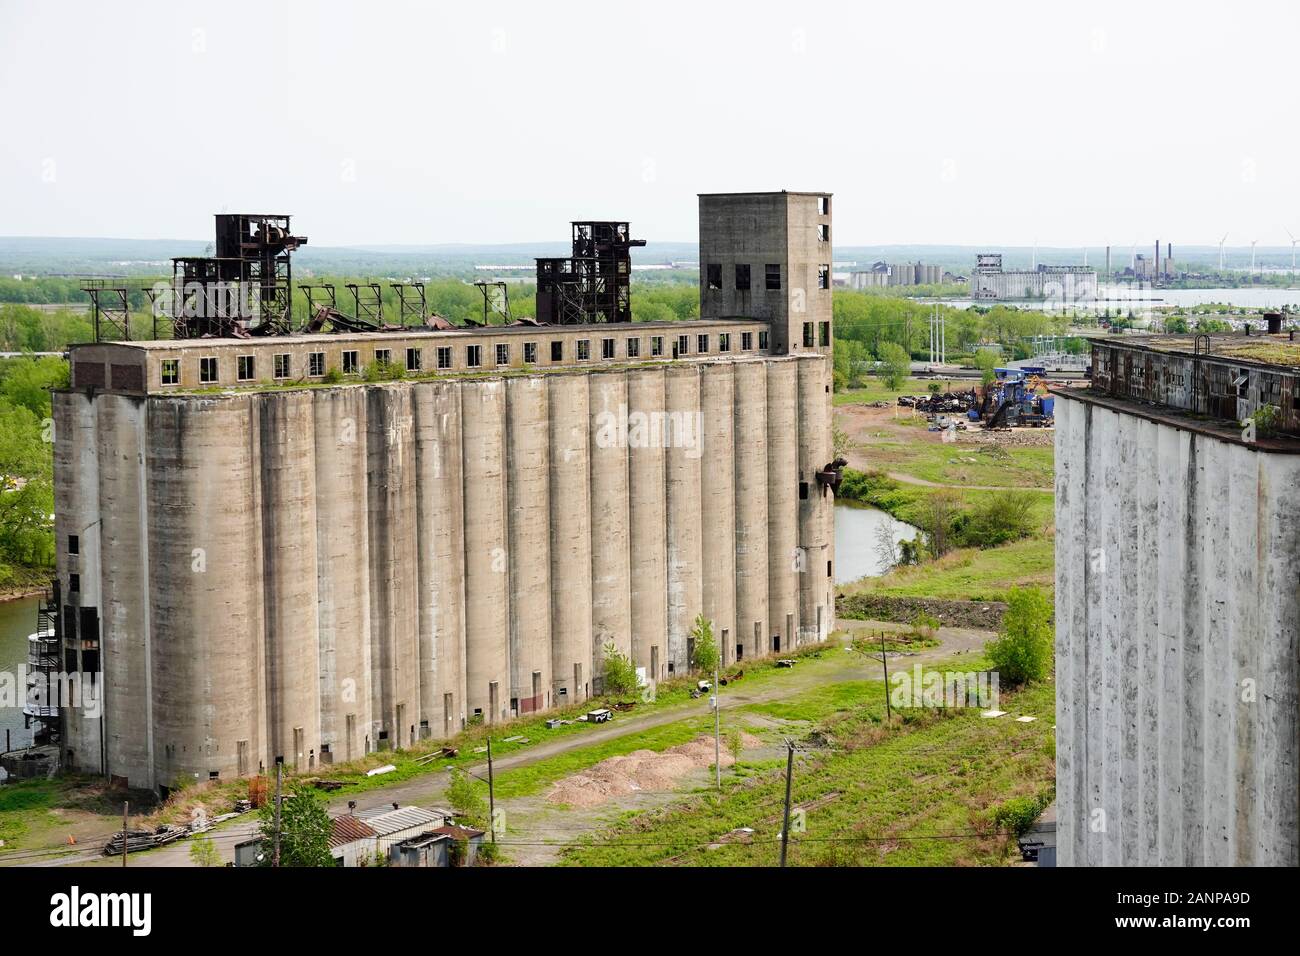 Grain silos in Buffalo New York Stock Photo